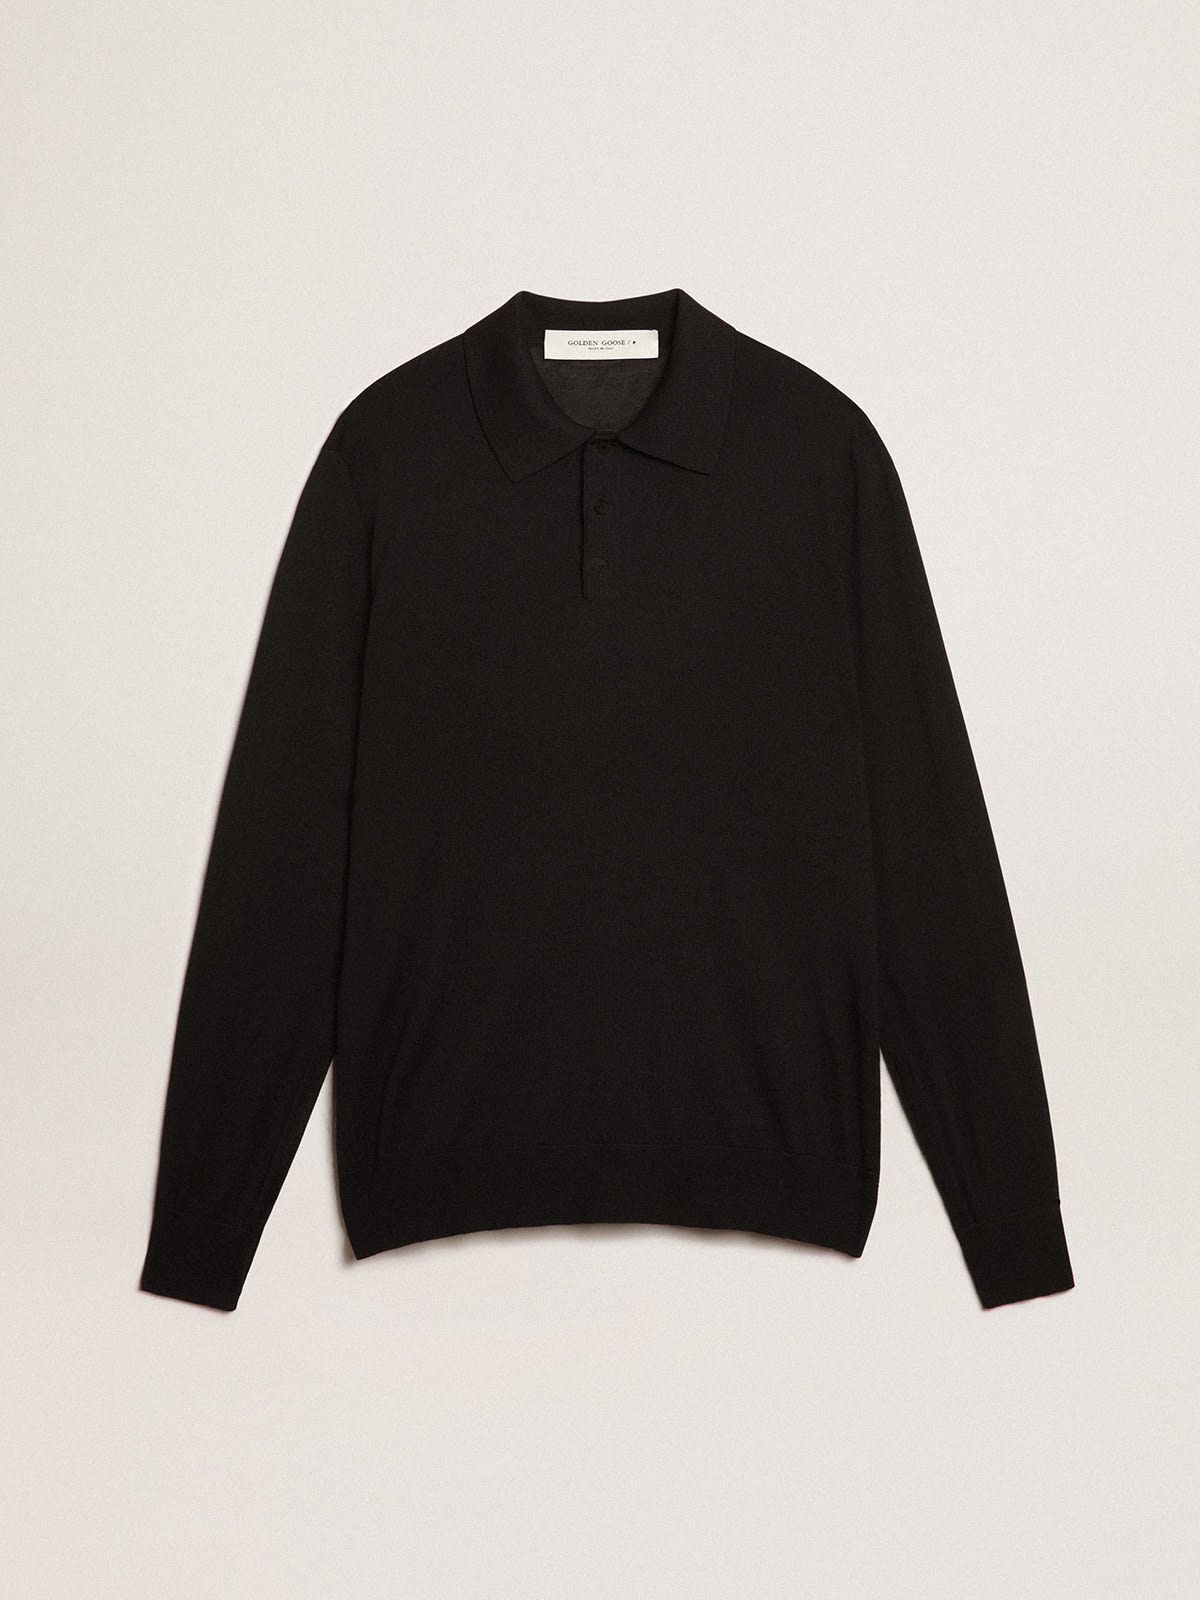 Golden Goose - Men’s long-sleeved polo shirt in black merino wool in 